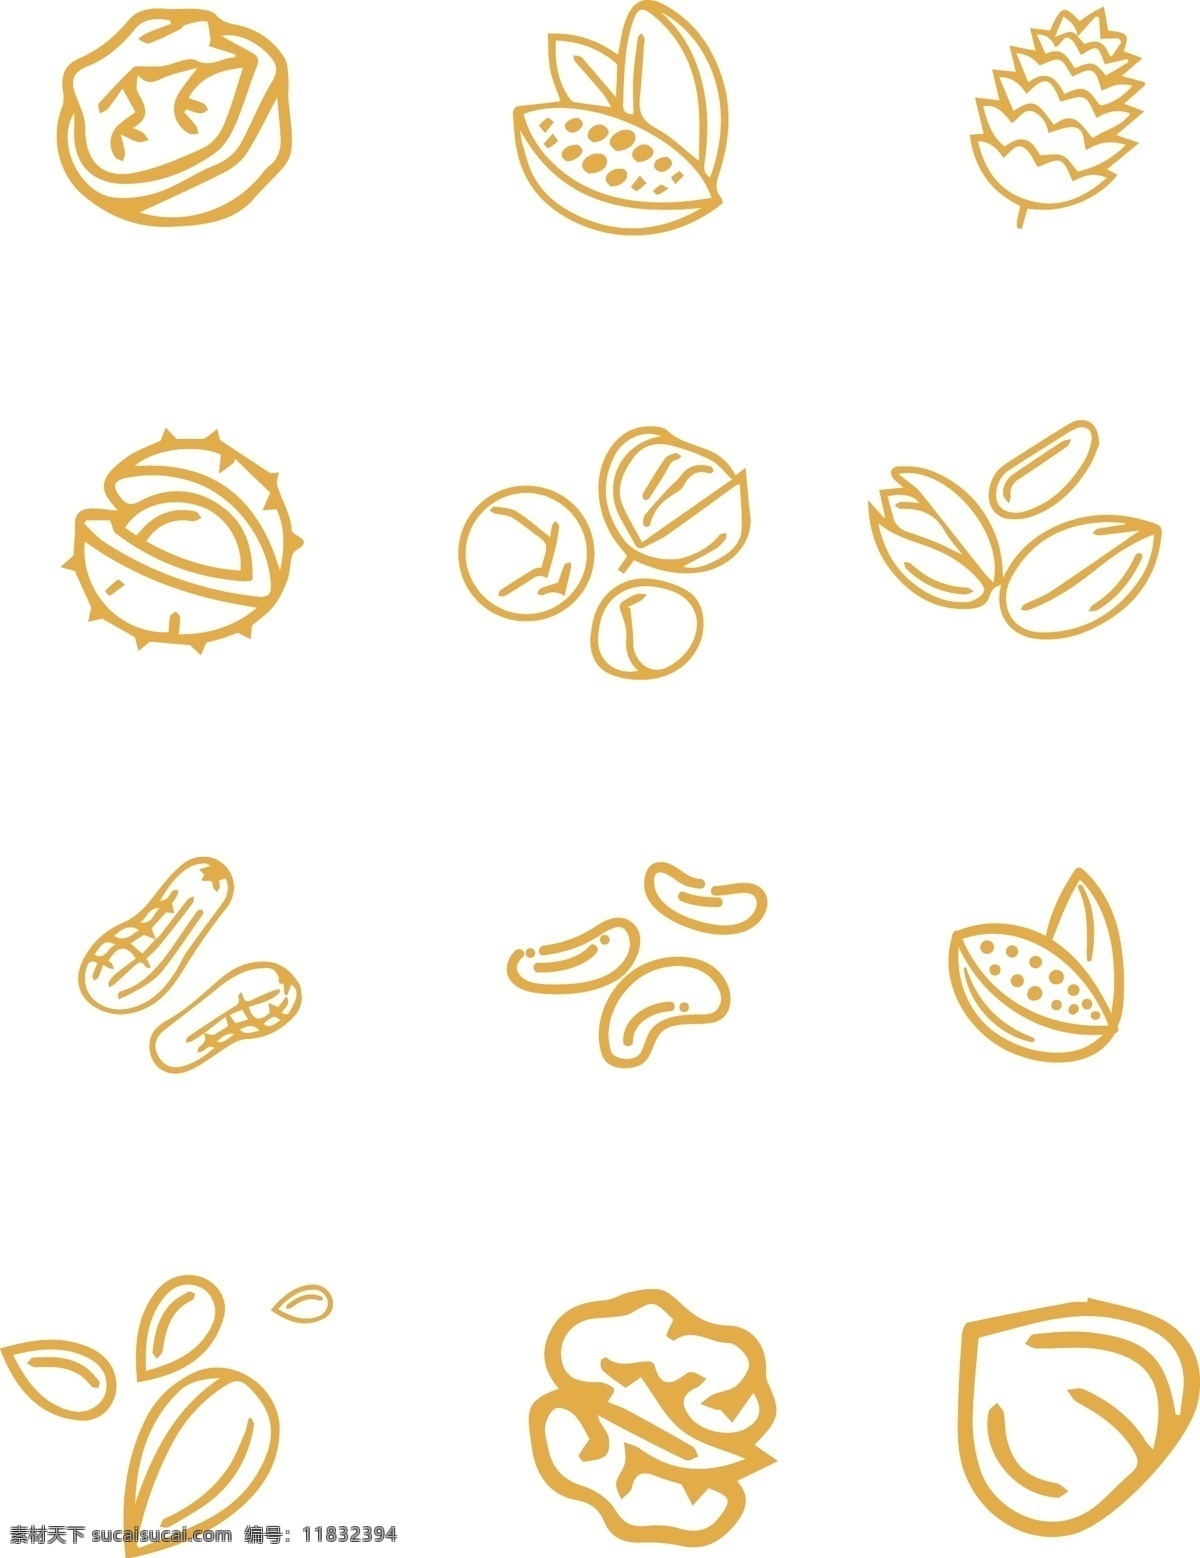 黄色 手绘 坚果 元素 食物 食材 美食 矢量元素 矢量坚果 黄色元素 手绘元素 ai元素